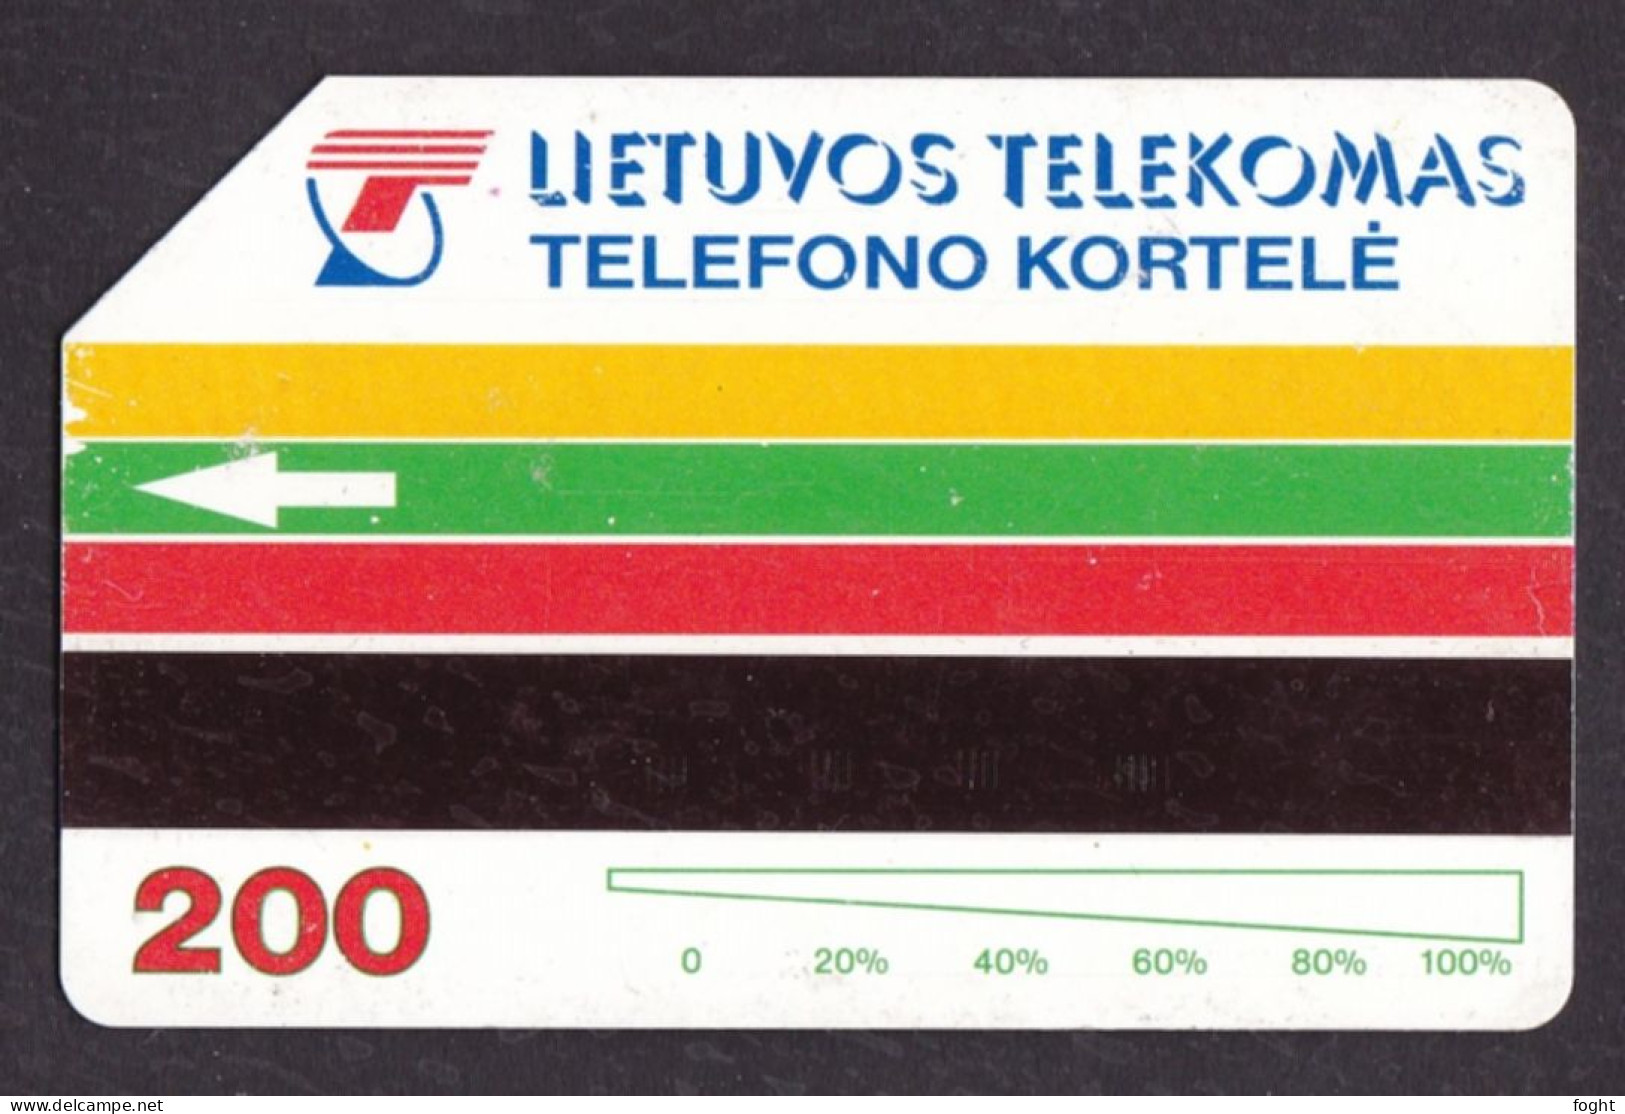 1994 Lietuvos Telekomas, Urmet Card, Traku Pilis, 200 Units, Col:LT-LTV-M003 - Lituanie